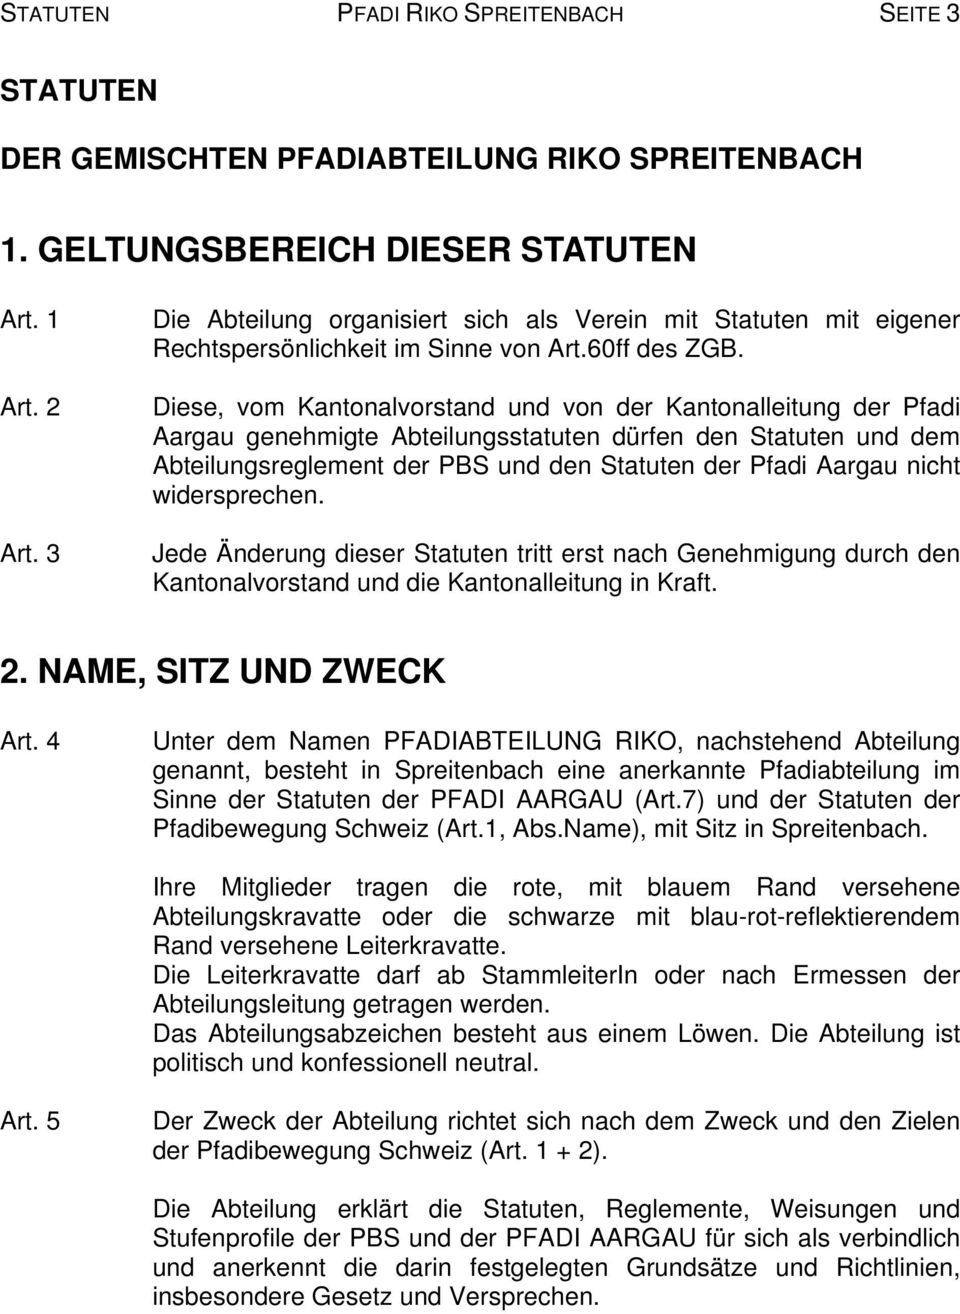 Diese, vom Kantonalvorstand und von der Kantonalleitung der Pfadi Aargau genehmigte Abteilungsstatuten dürfen den Statuten und dem Abteilungsreglement der PBS und den Statuten der Pfadi Aargau nicht